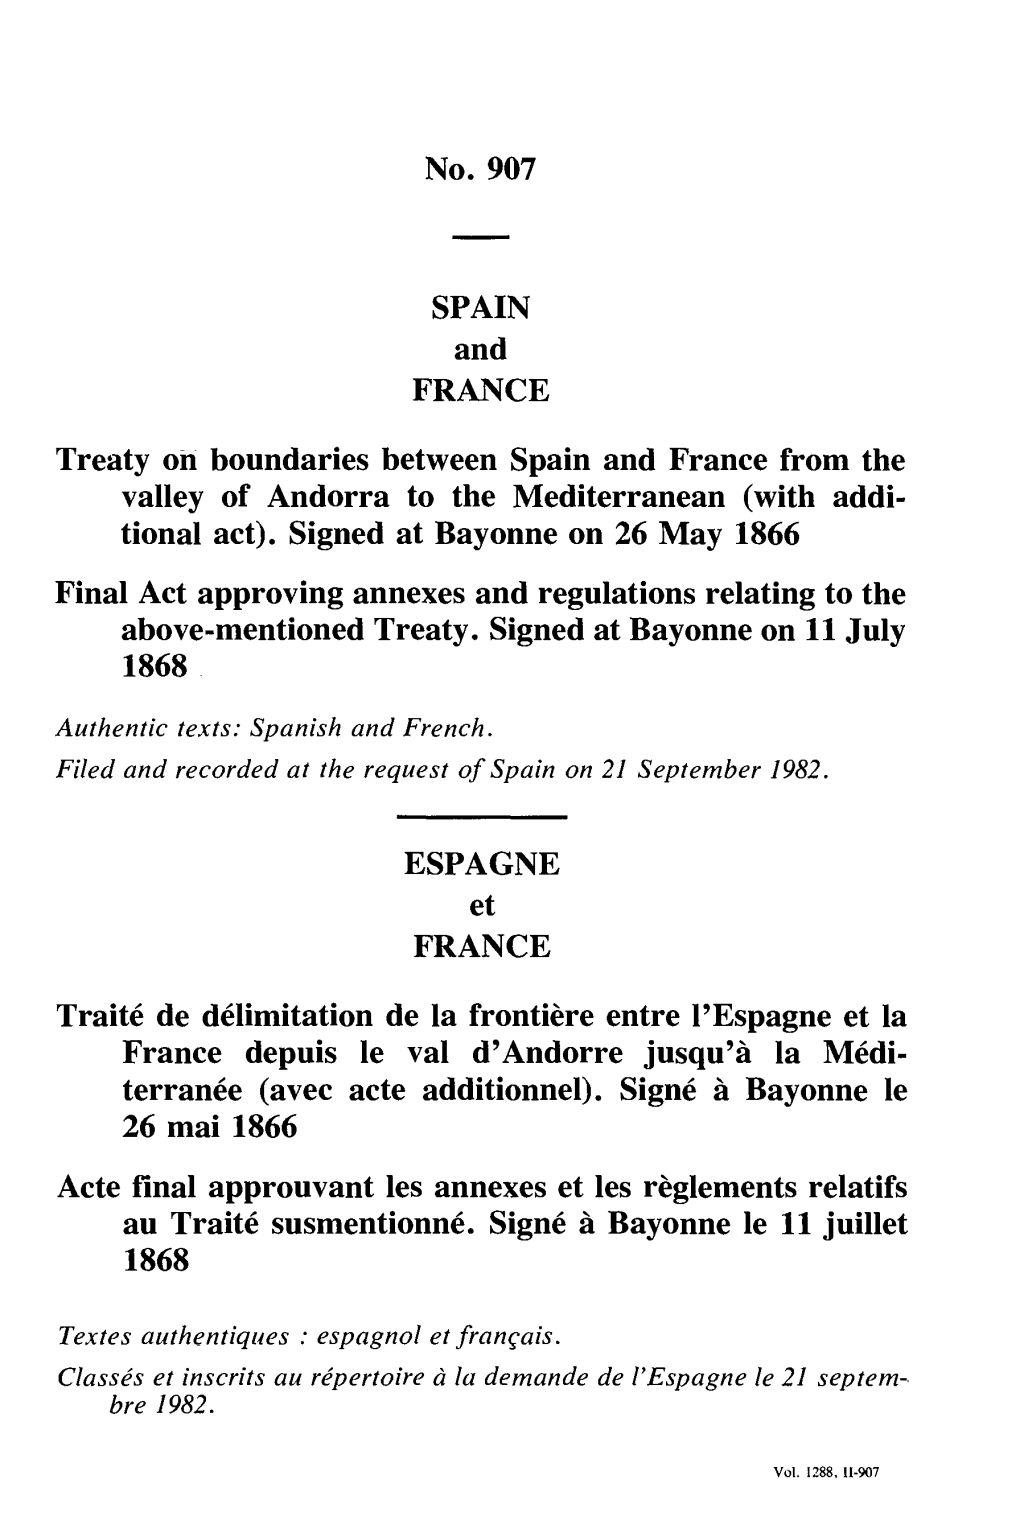 No. 907 SPAIN and FRANCE Treaty